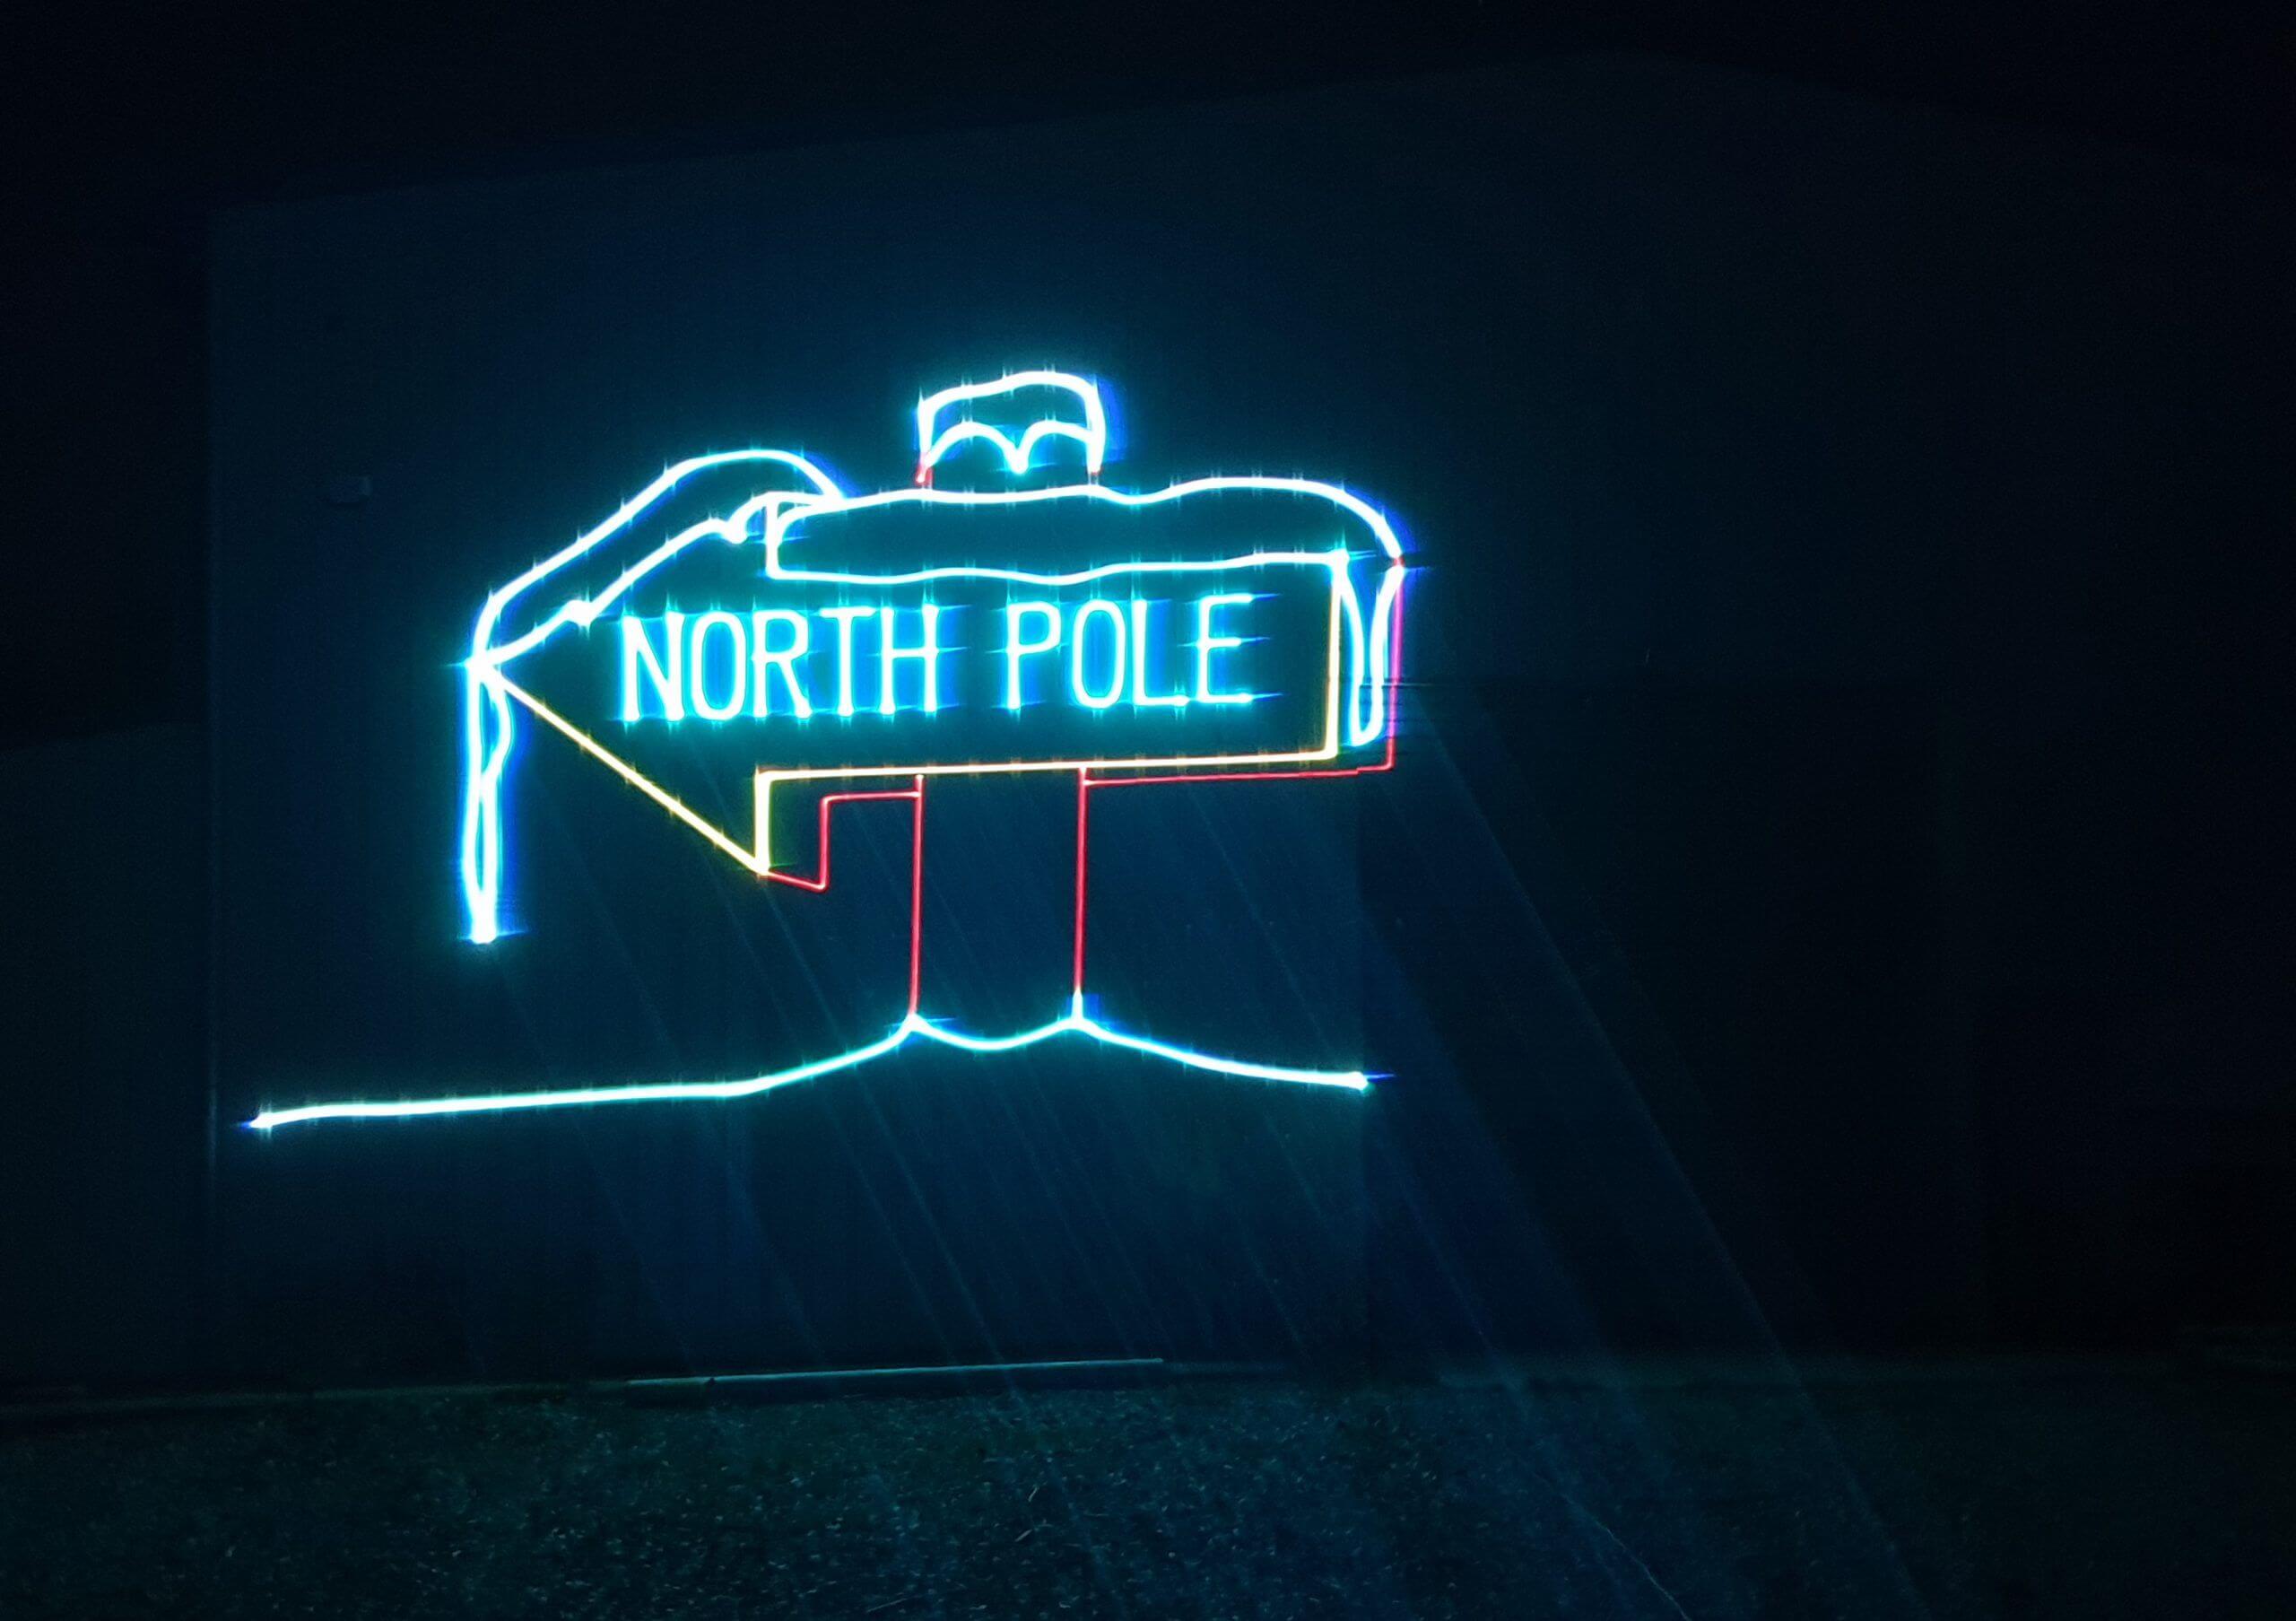 Europe Évènement - Projection laser d'un panneau avec écrit dessus North Pole